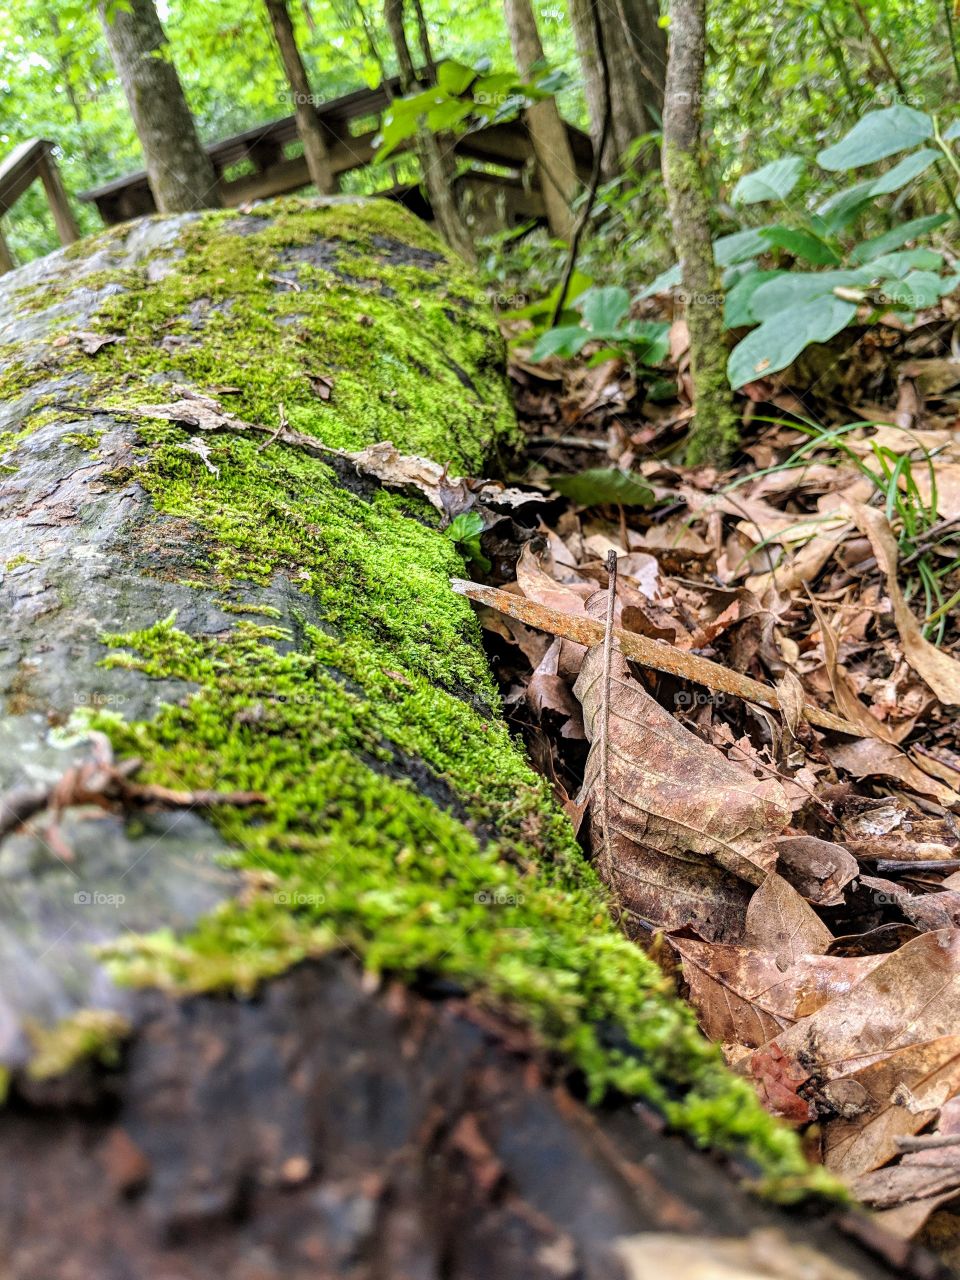 Moss on fallen tree